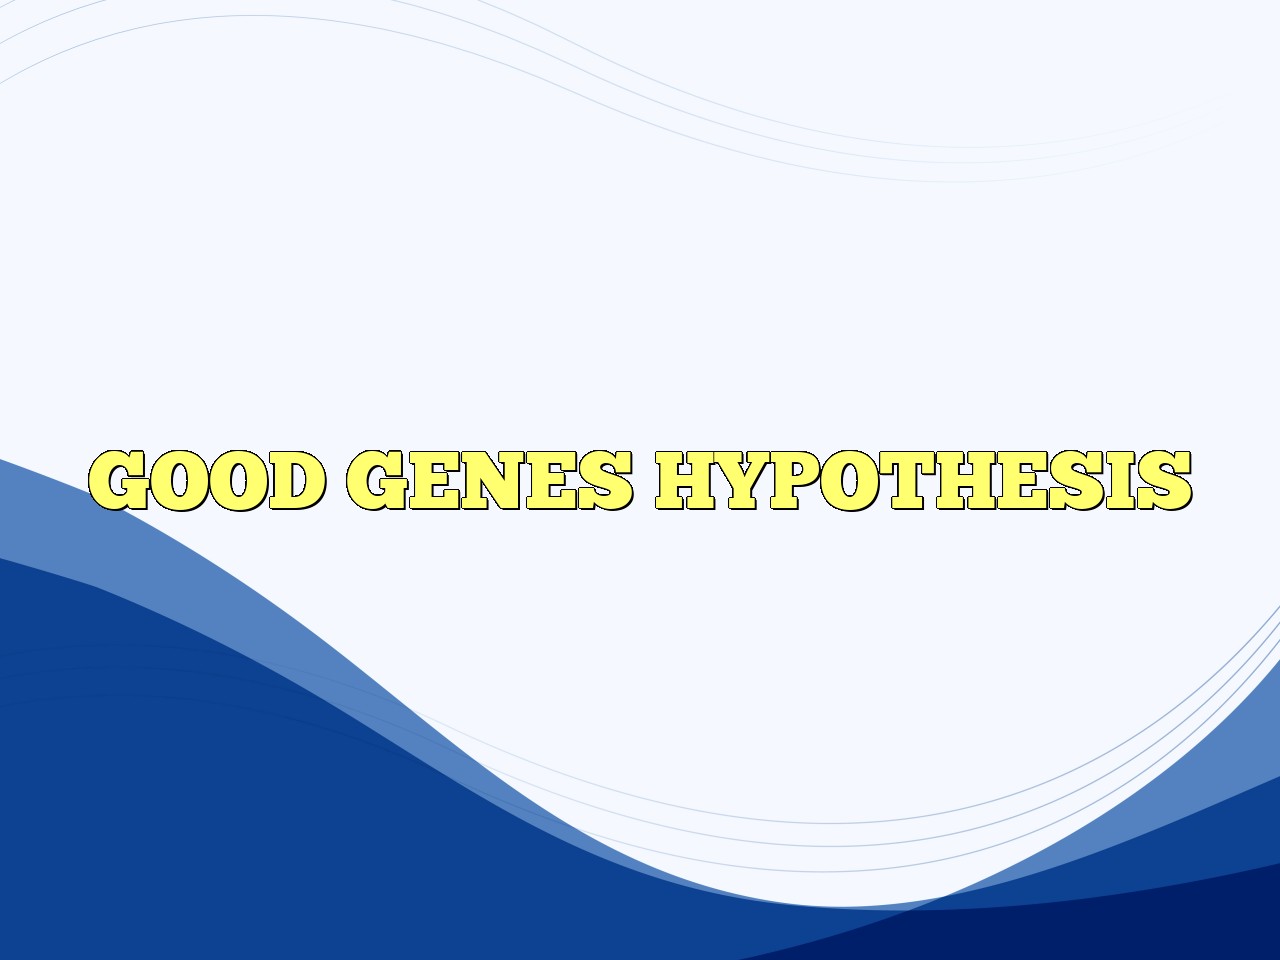 describe the good genes hypothesis